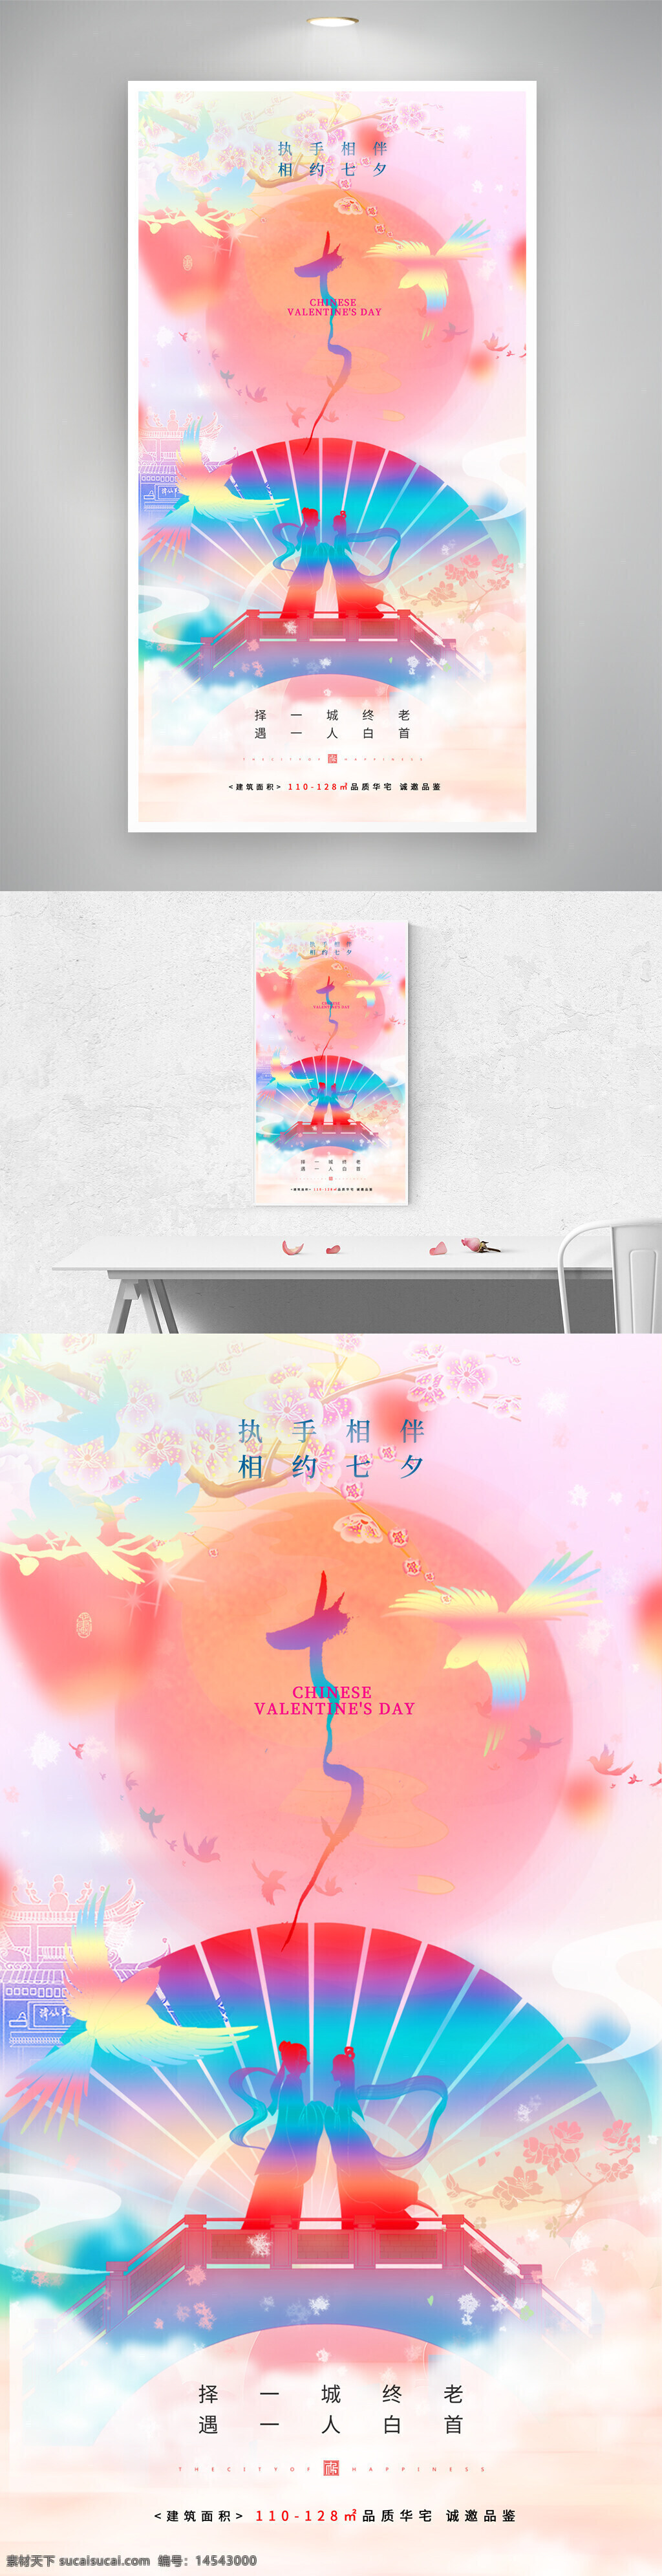 浪漫七夕 插画意境 牛郎织女 传统节日 七夕节海报 地产广告